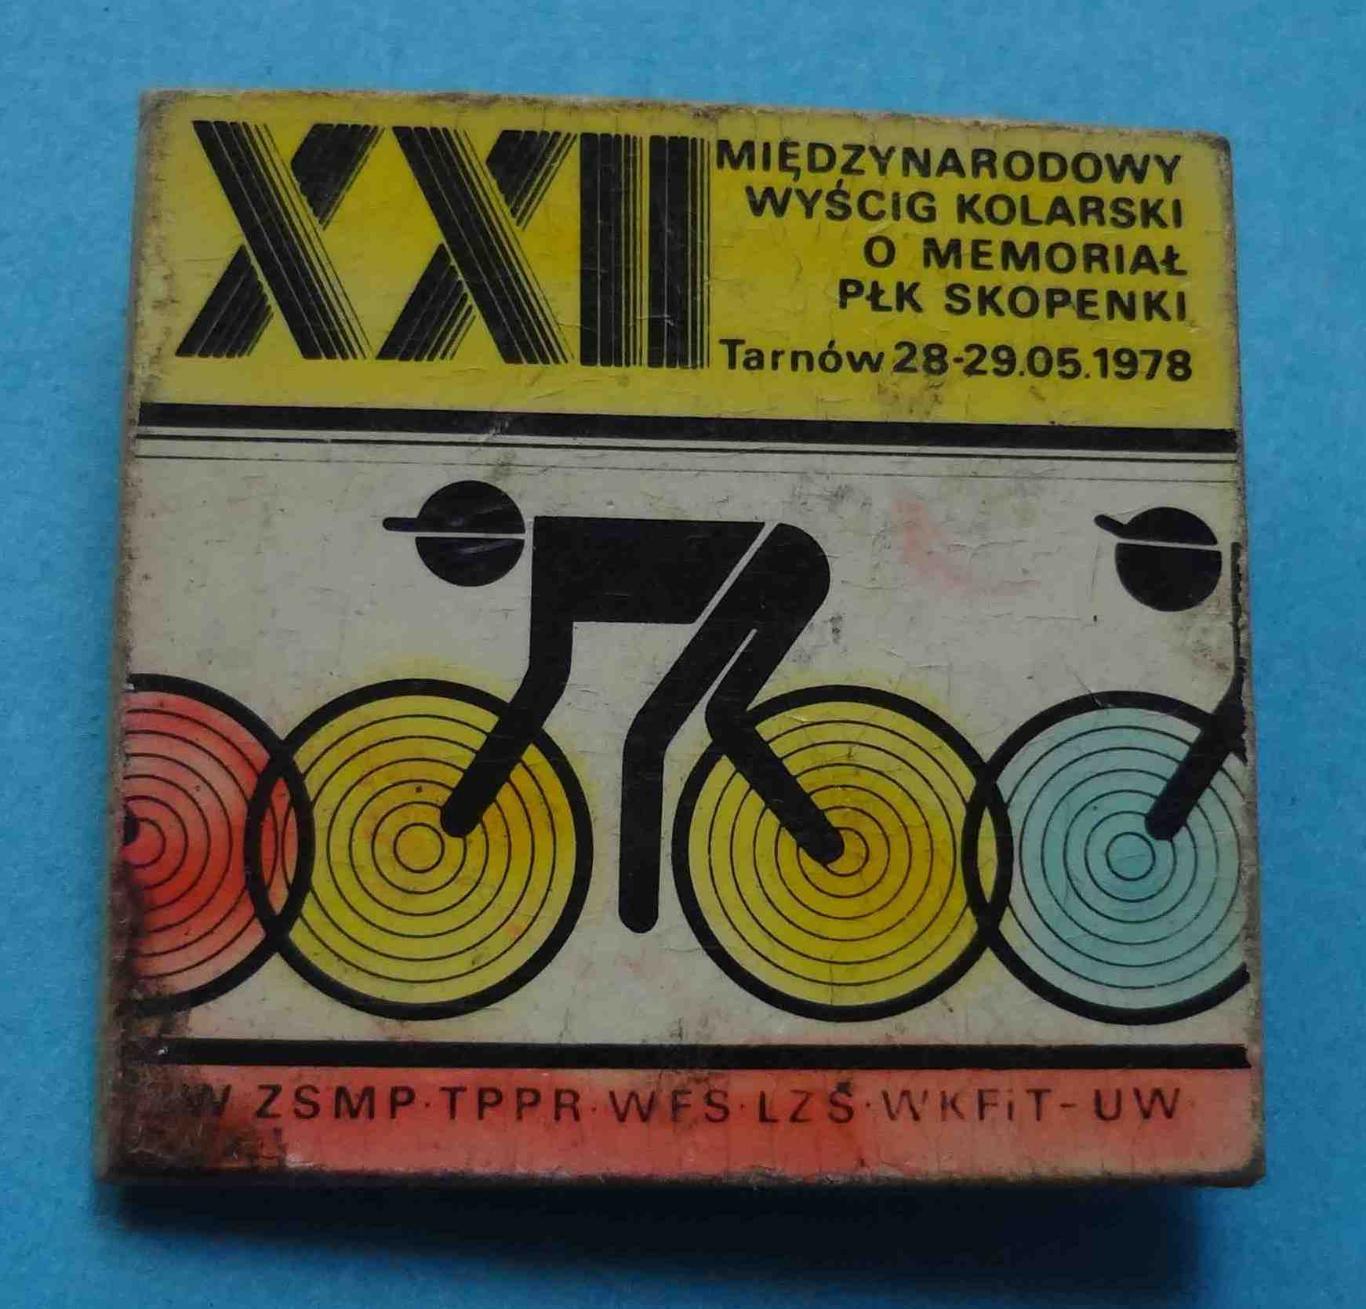 22 Международный велопробег мемориала полковника Скопенки 1978 (14)